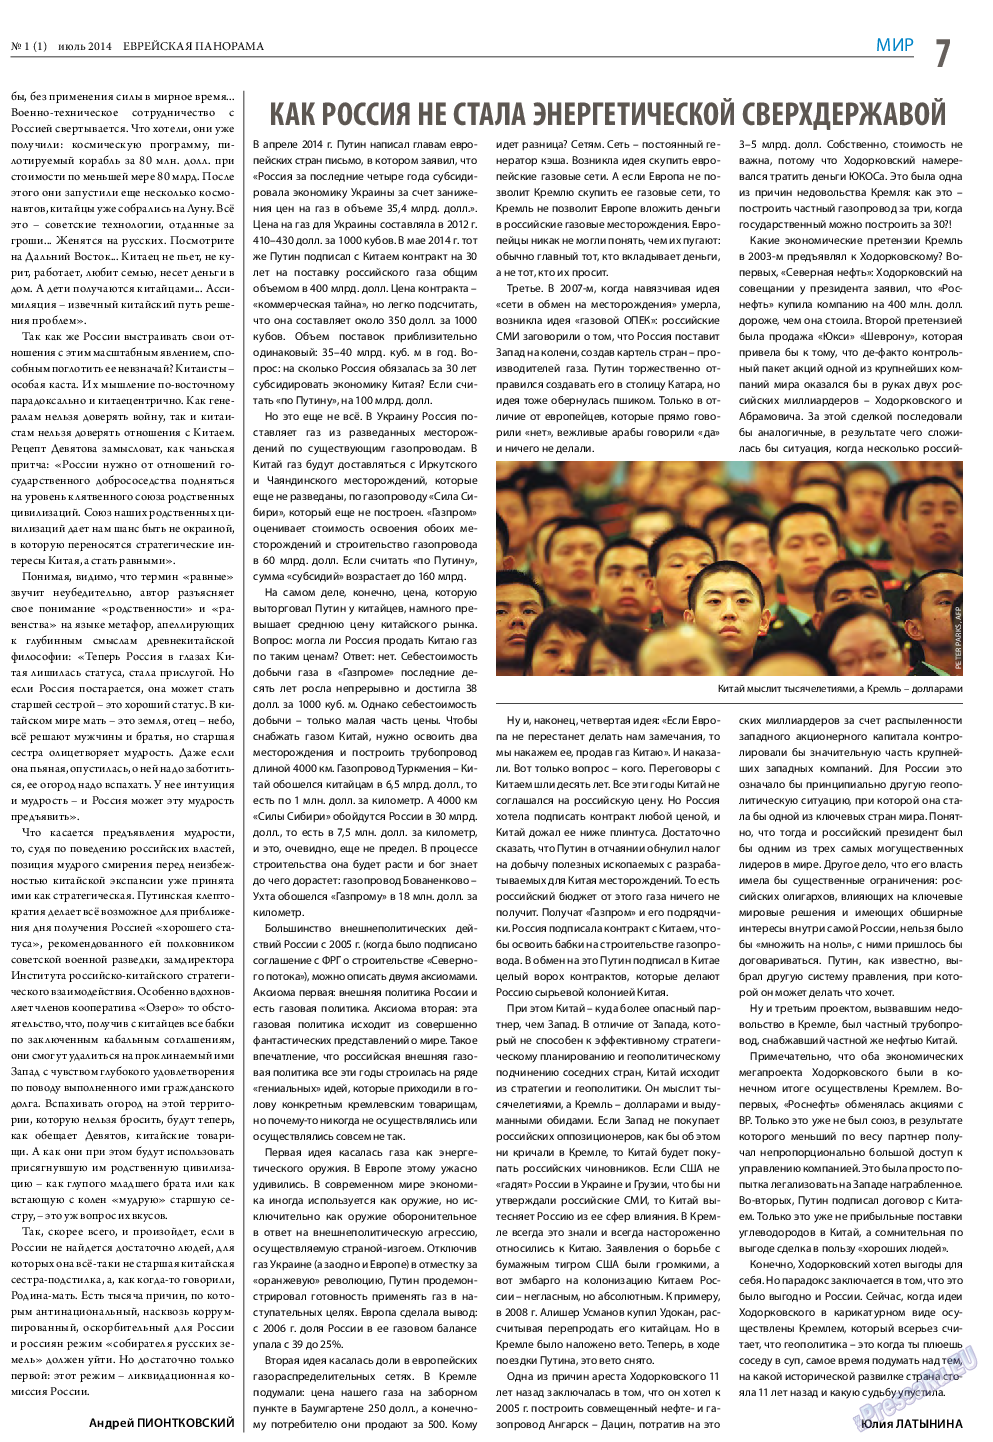 Еврейская панорама (газета). 2014 год, номер 1, стр. 7